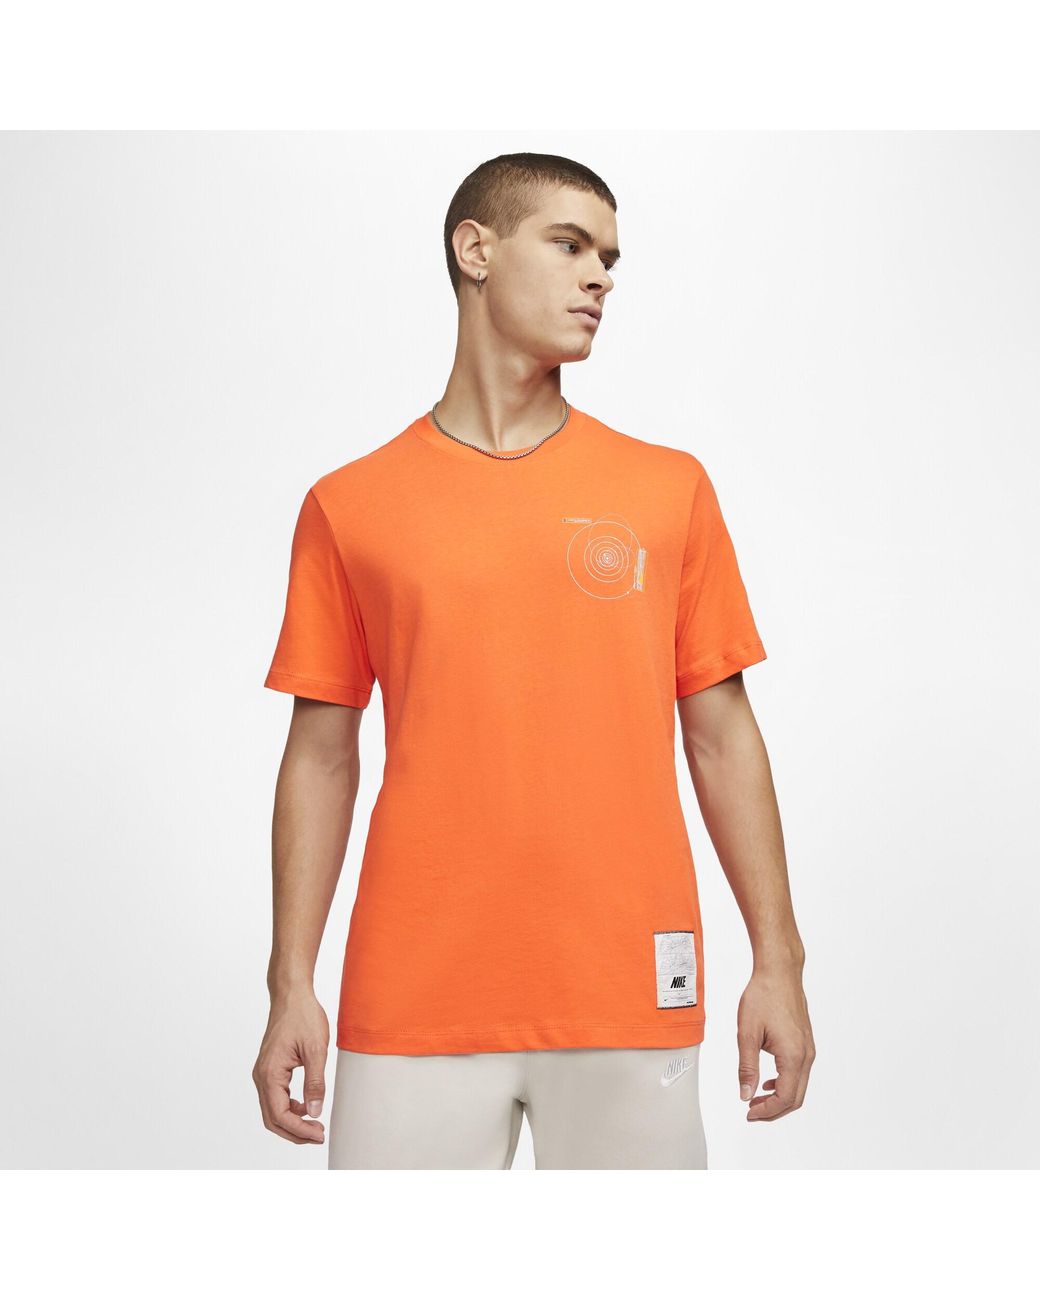 Nike Cotton Sn. 2020 T-shirt in Orange for Men - Lyst